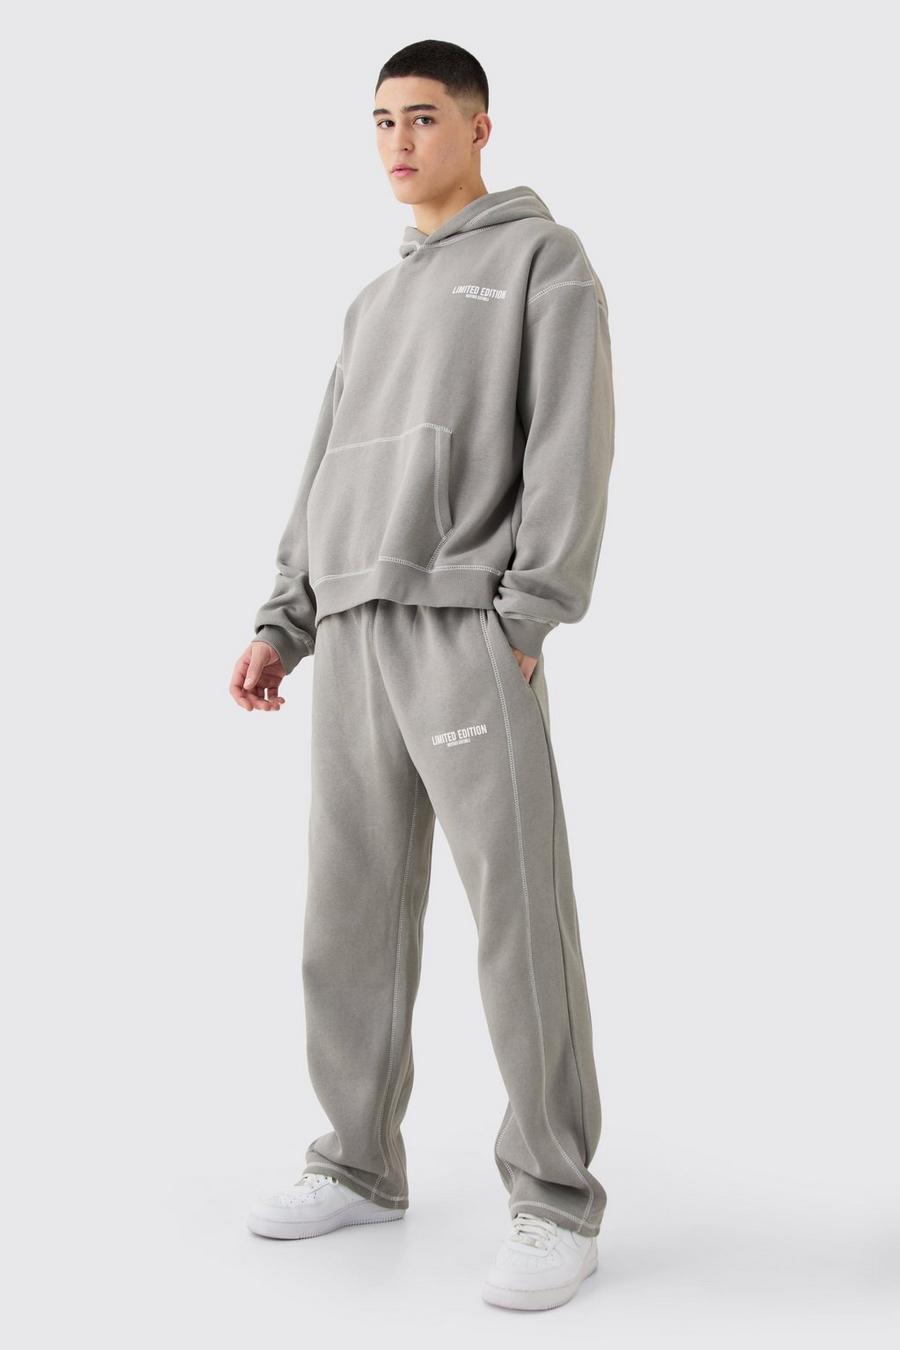 Sudadera oversize recta con capucha y costuras en contraste Limited Edition, Charcoal